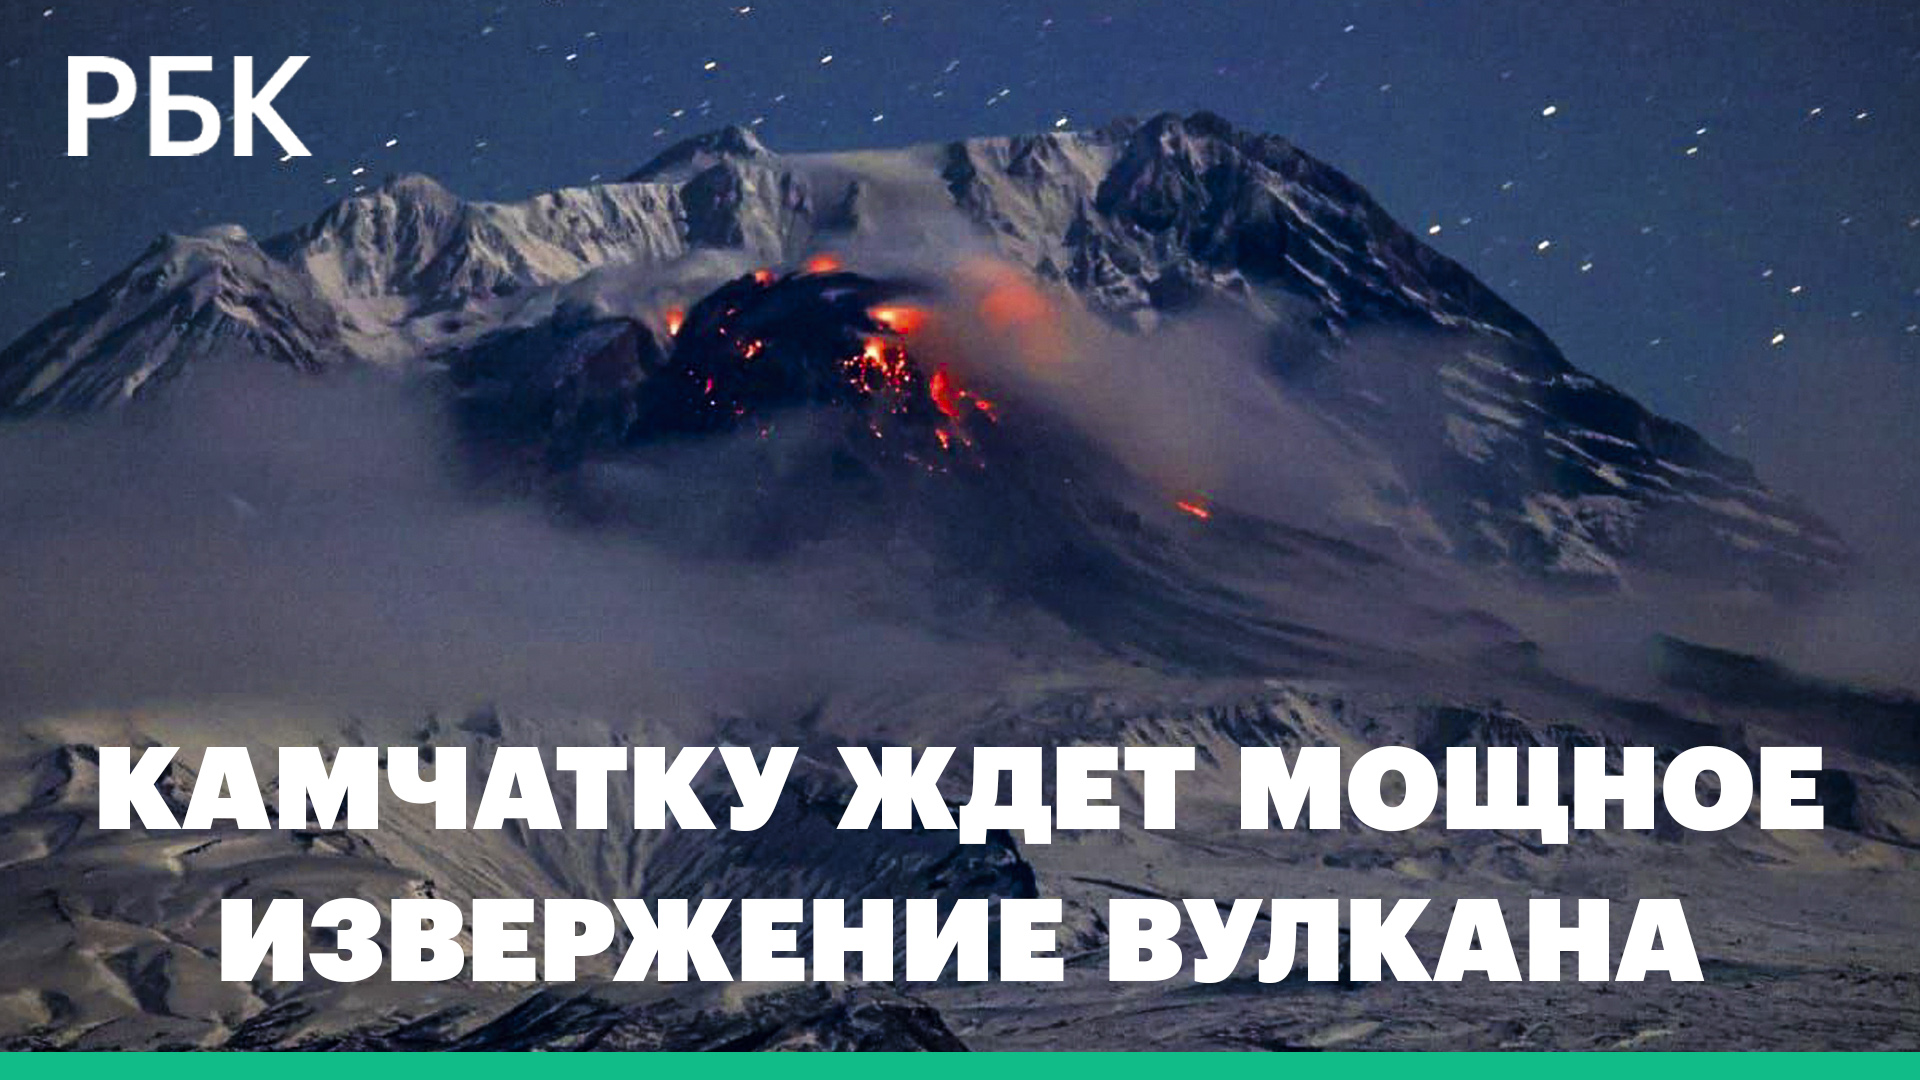 На Камчатке вулкан Шивелуч выбрасывает столбы пепла. Это может стать сильнейшим извержением